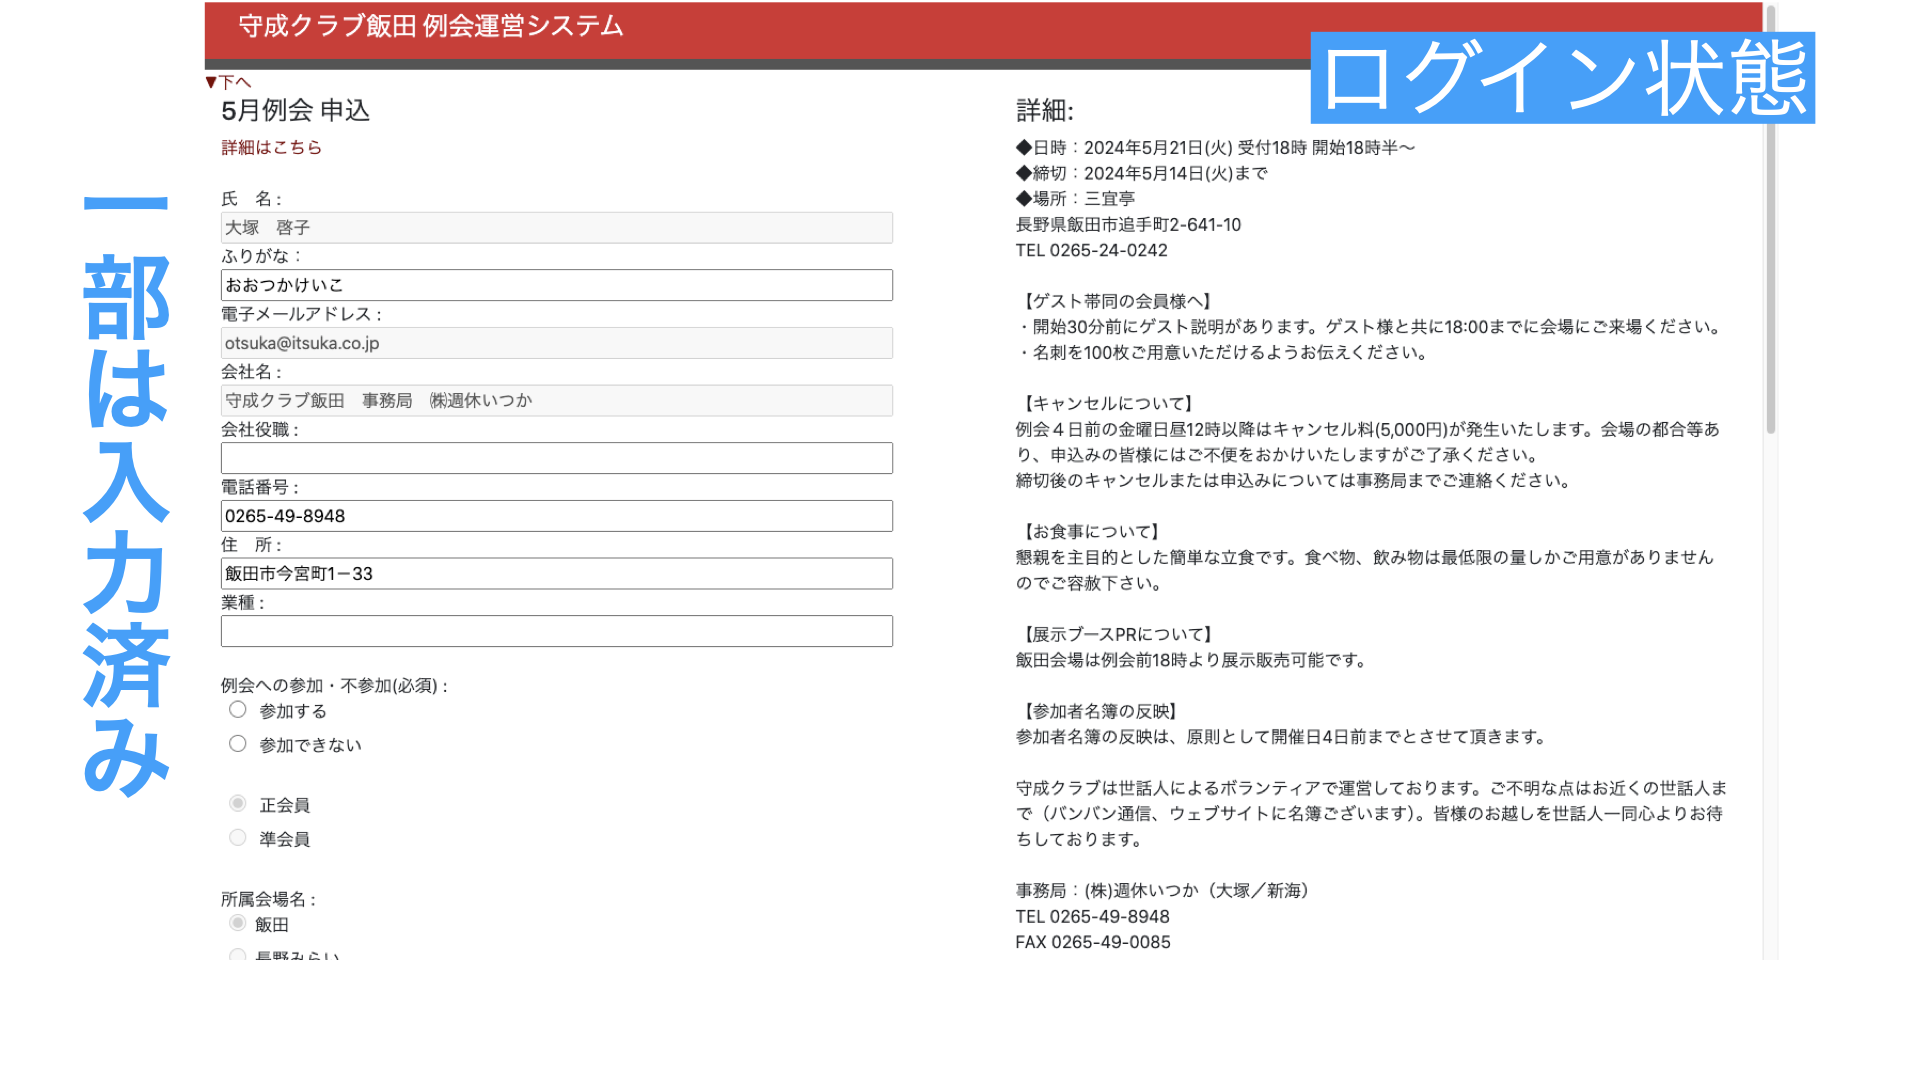 例会申し込みシステムの導入資料 専用サイト ログイン後の項目入力の画面